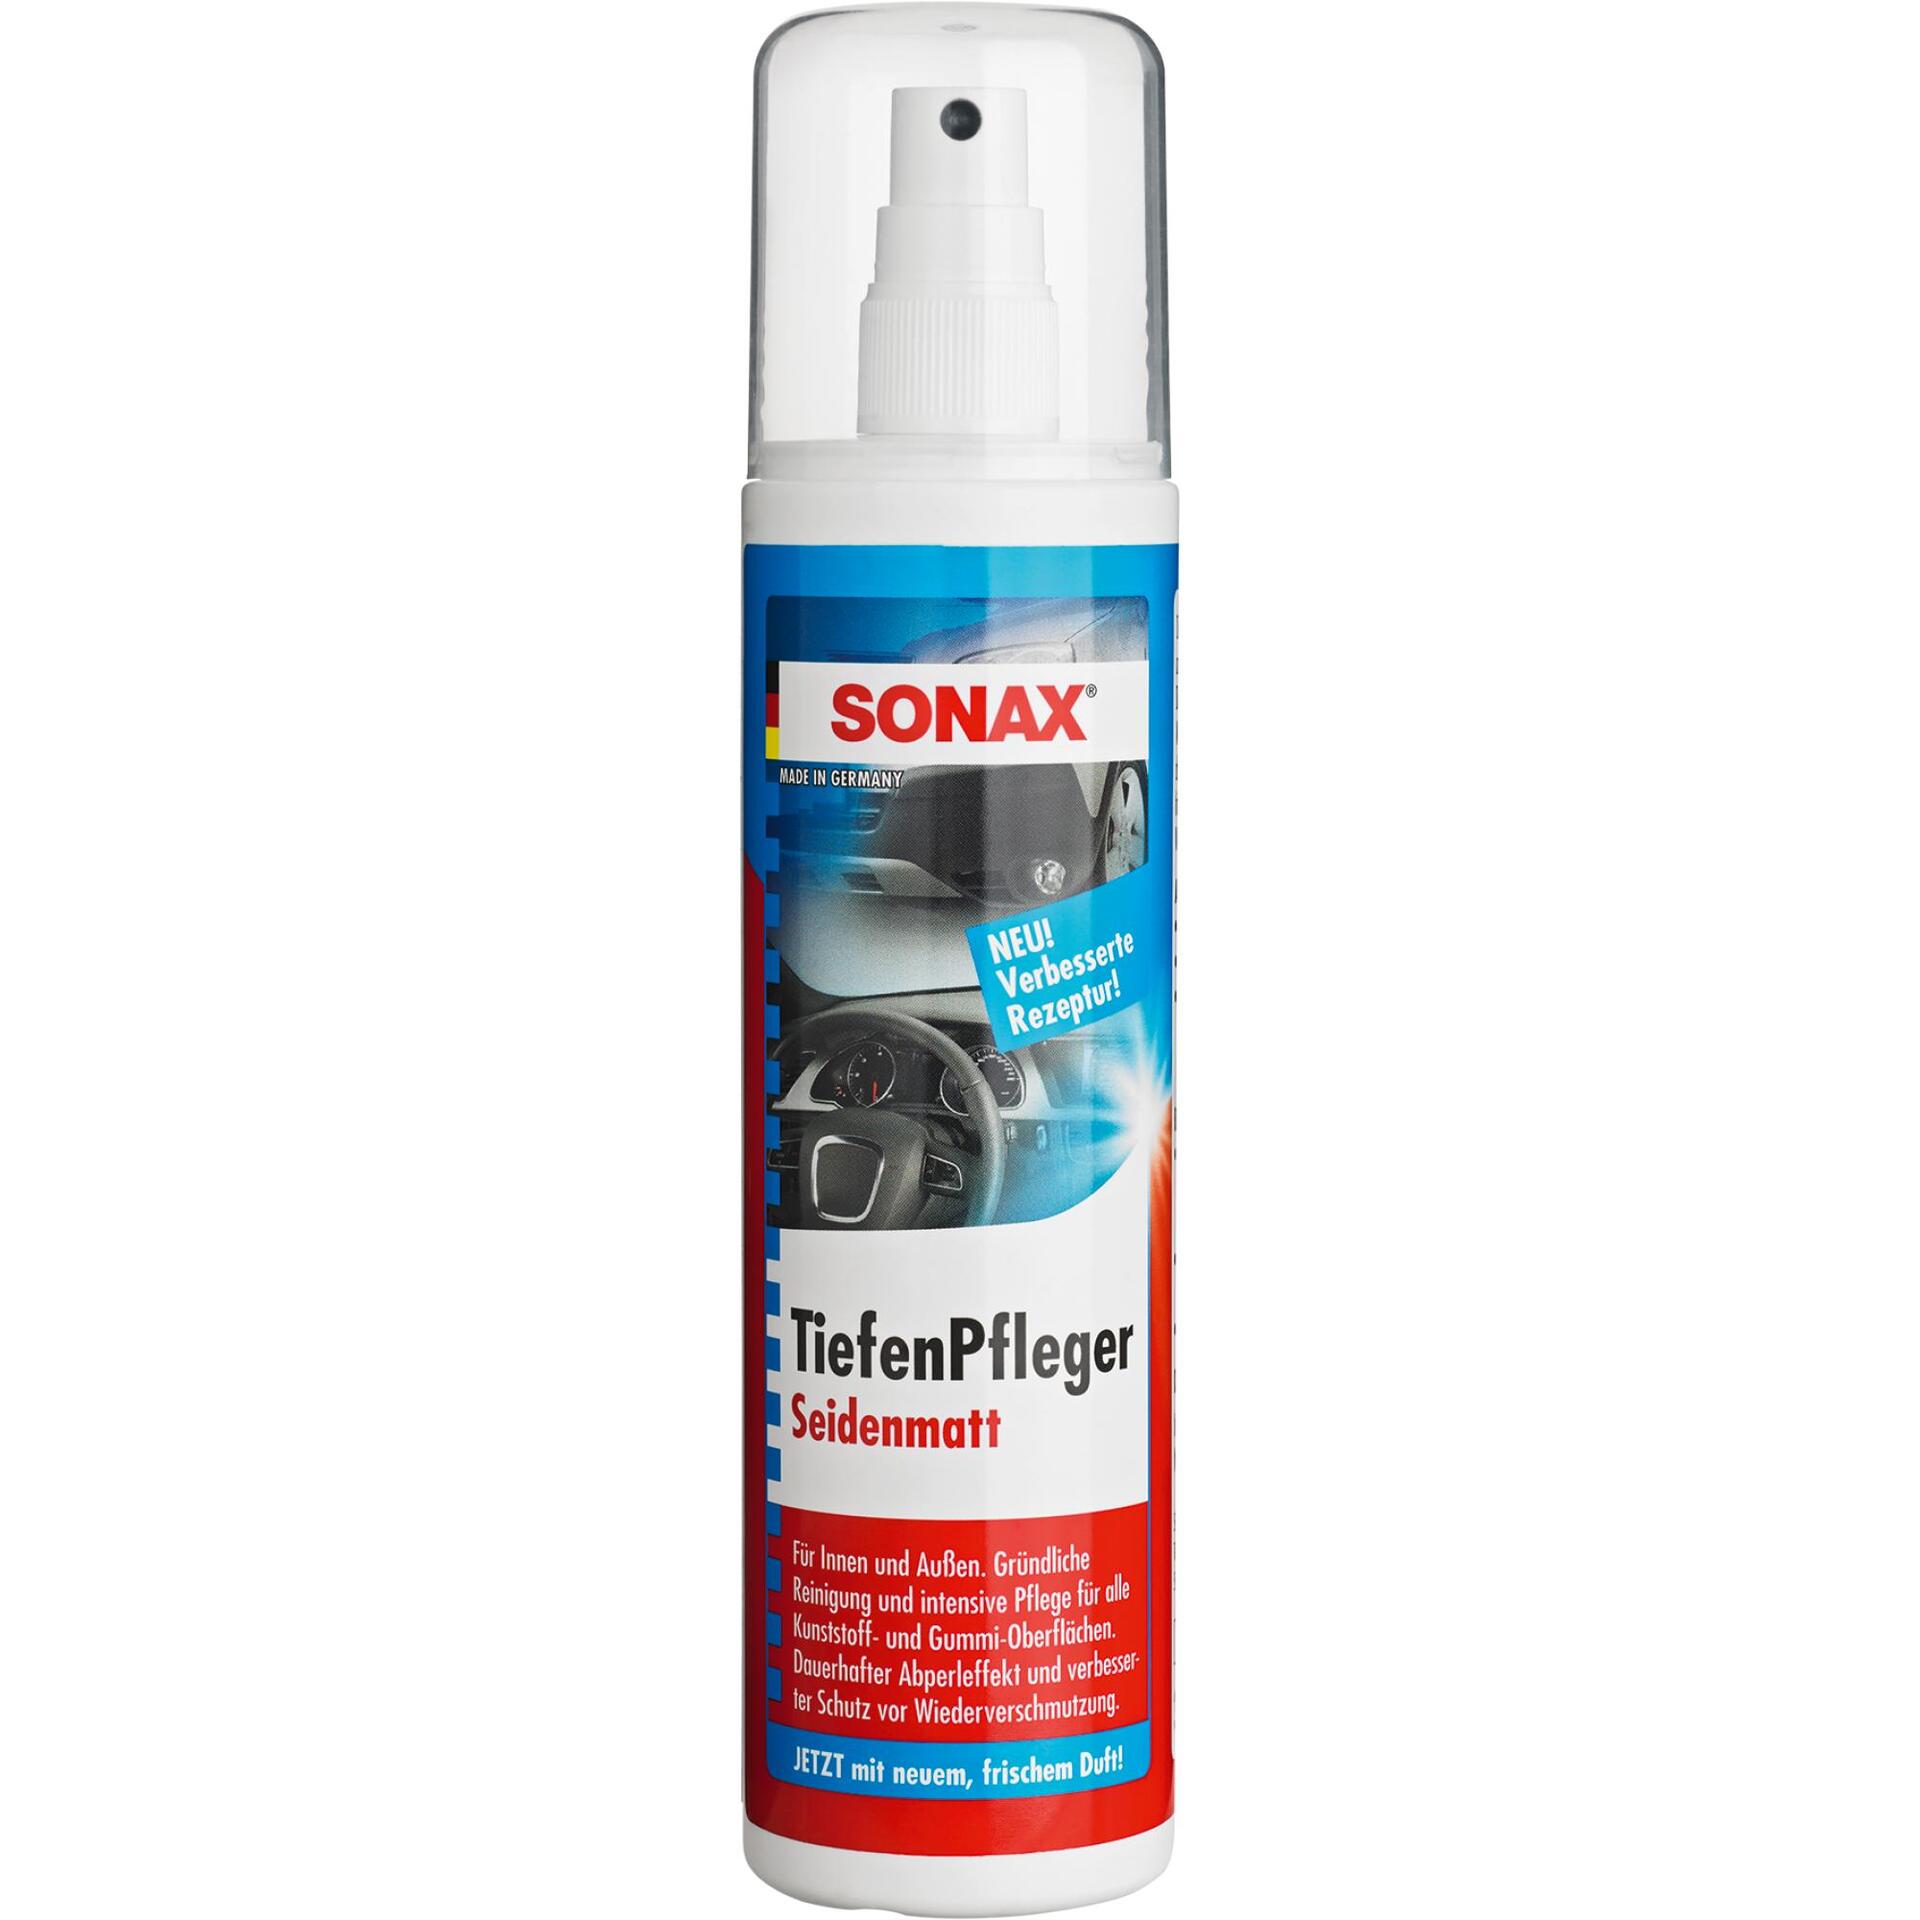 SONAX Tiefenpflege 300 ml